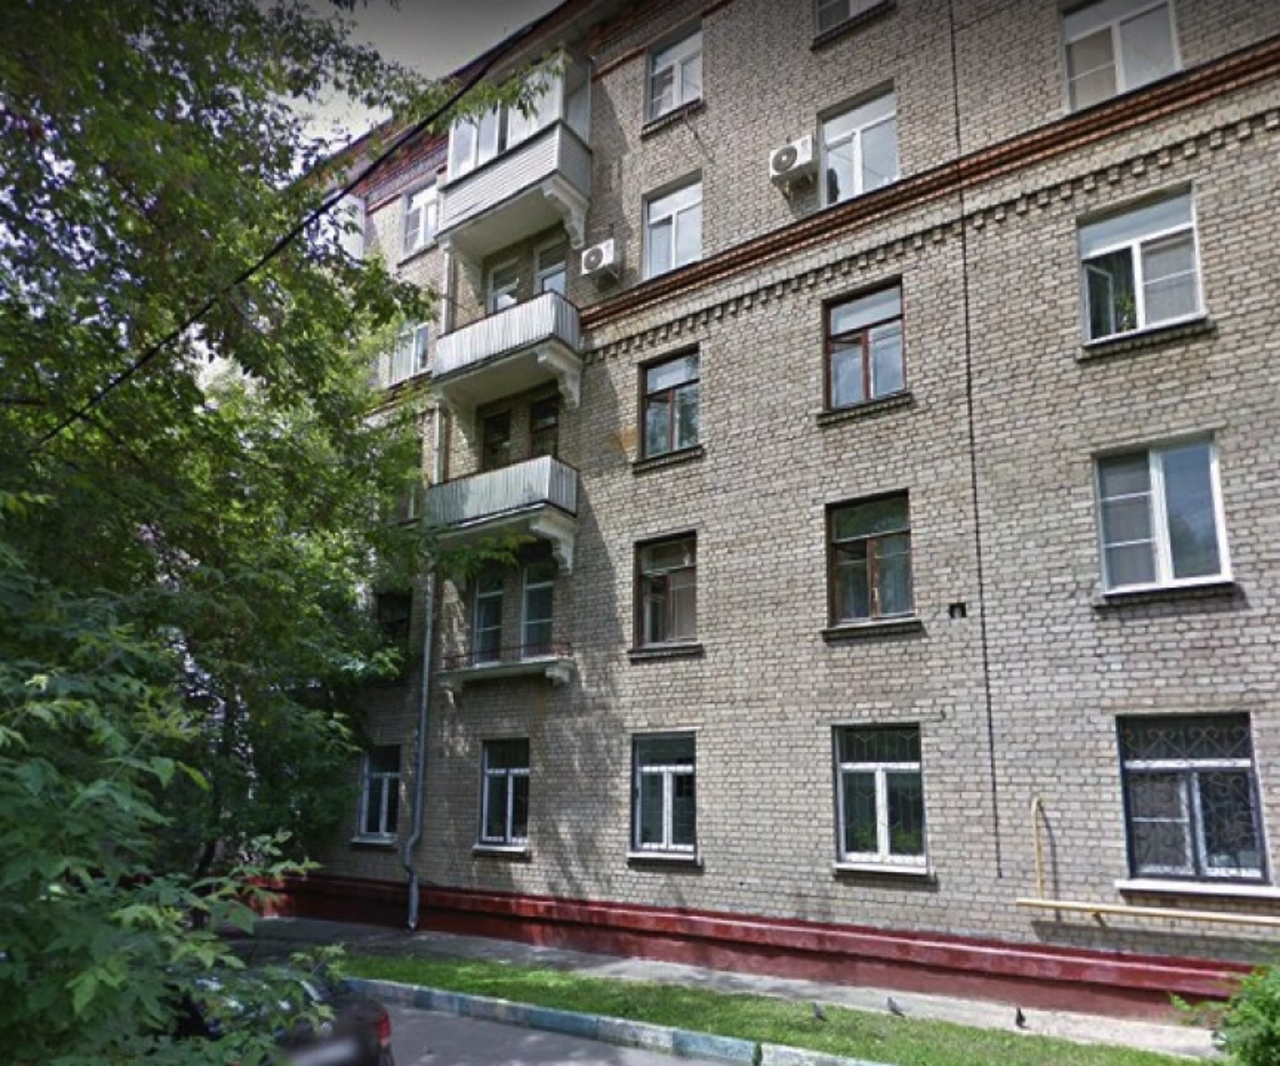 Продам квартиру в Москве по адресу Каширское шоссе, 56к2, площадь 153 квм Недвижимость Москва (Россия)  Единая продуманная концепция дизайнерской отделки холлов и входной группы